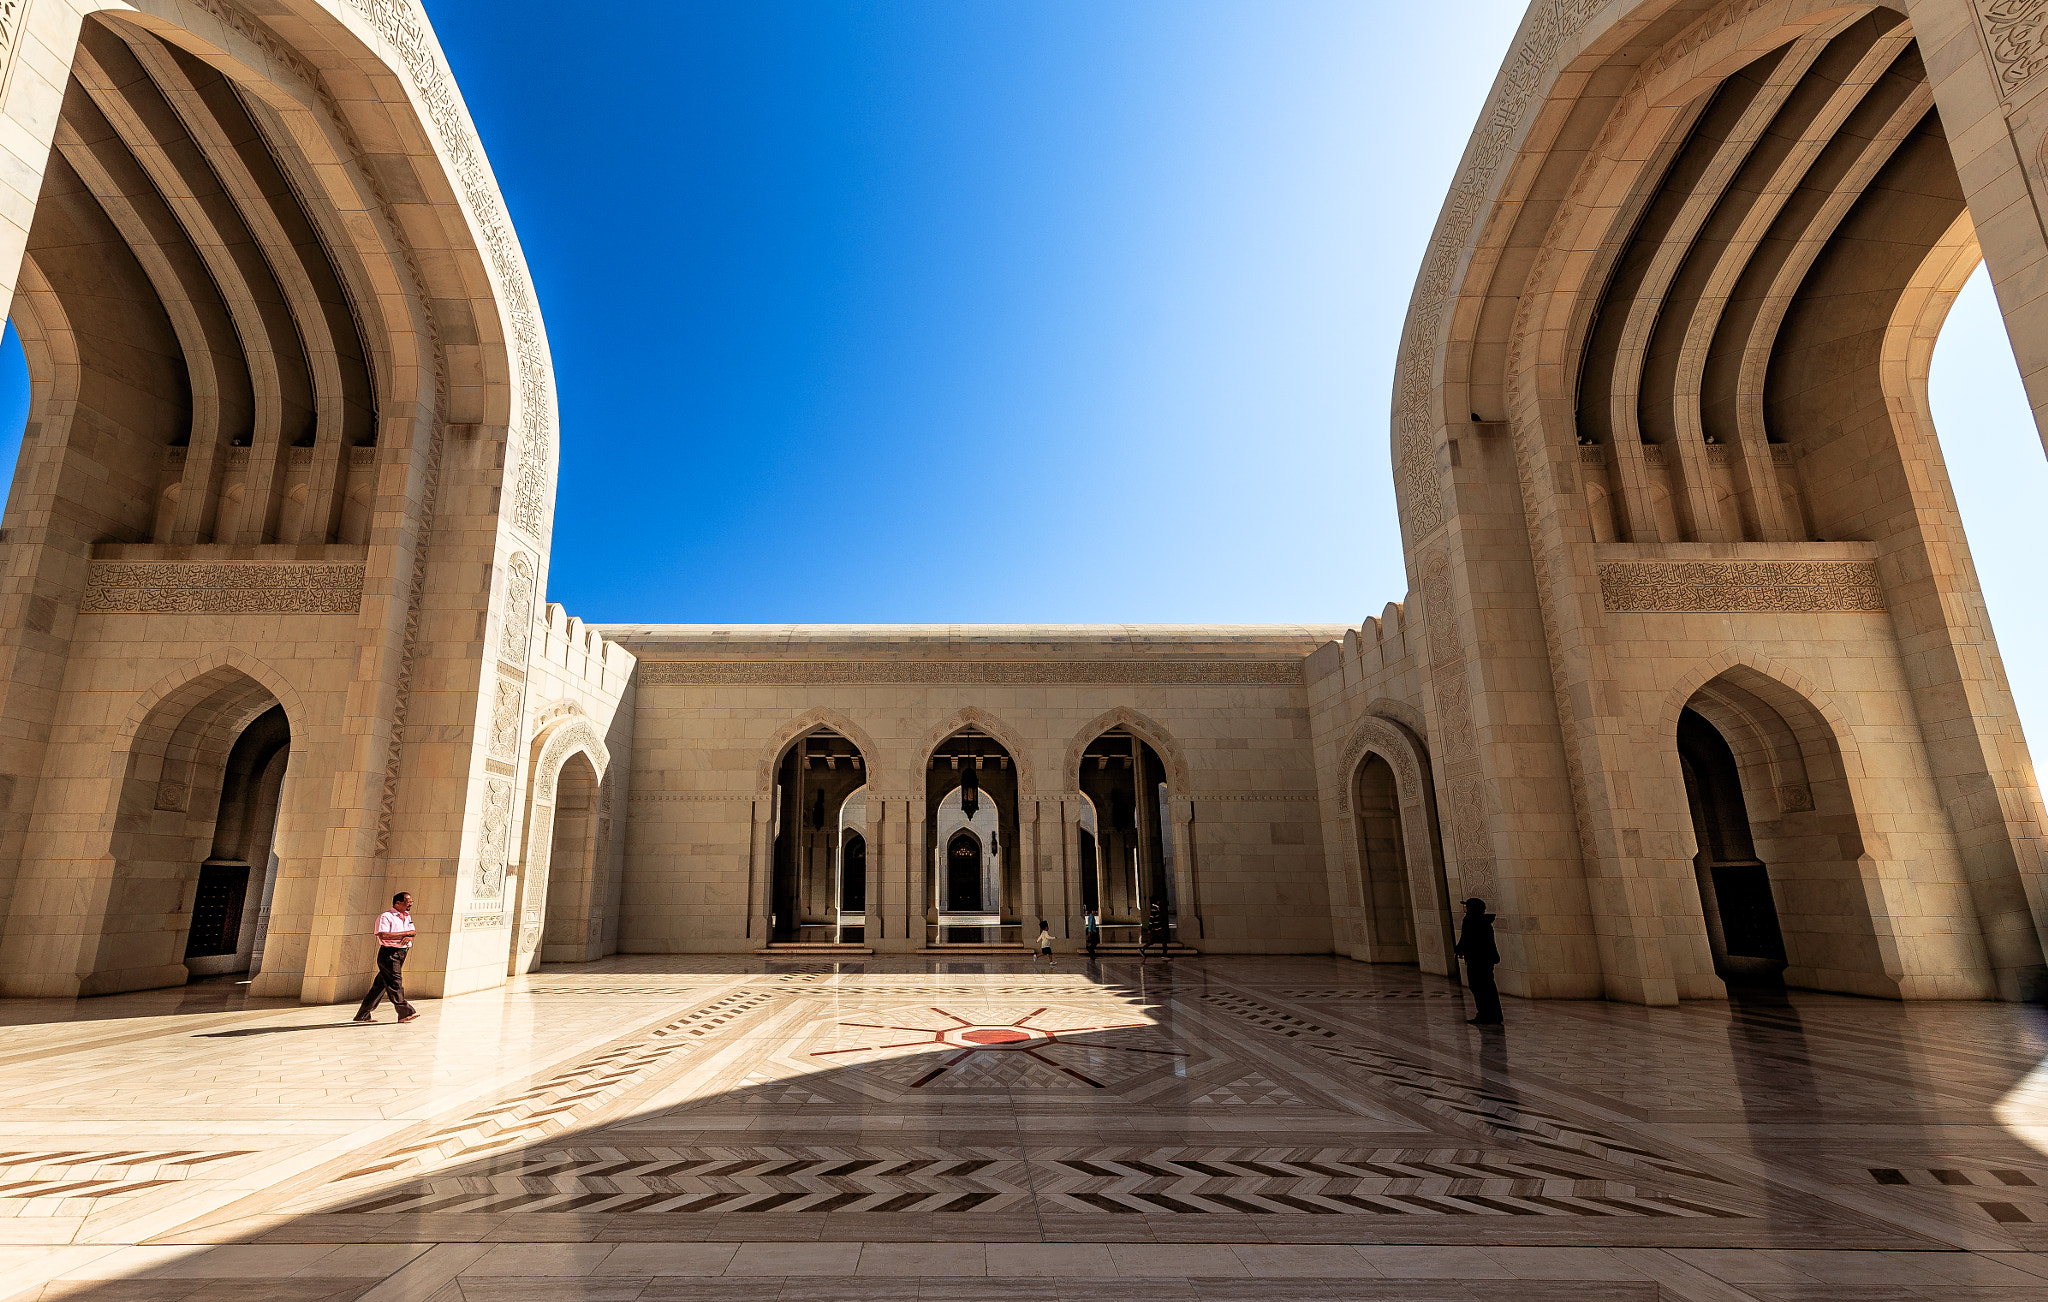 Canon EOS 6D sample photo. The sultan qaboos grand mosque no 2. photography